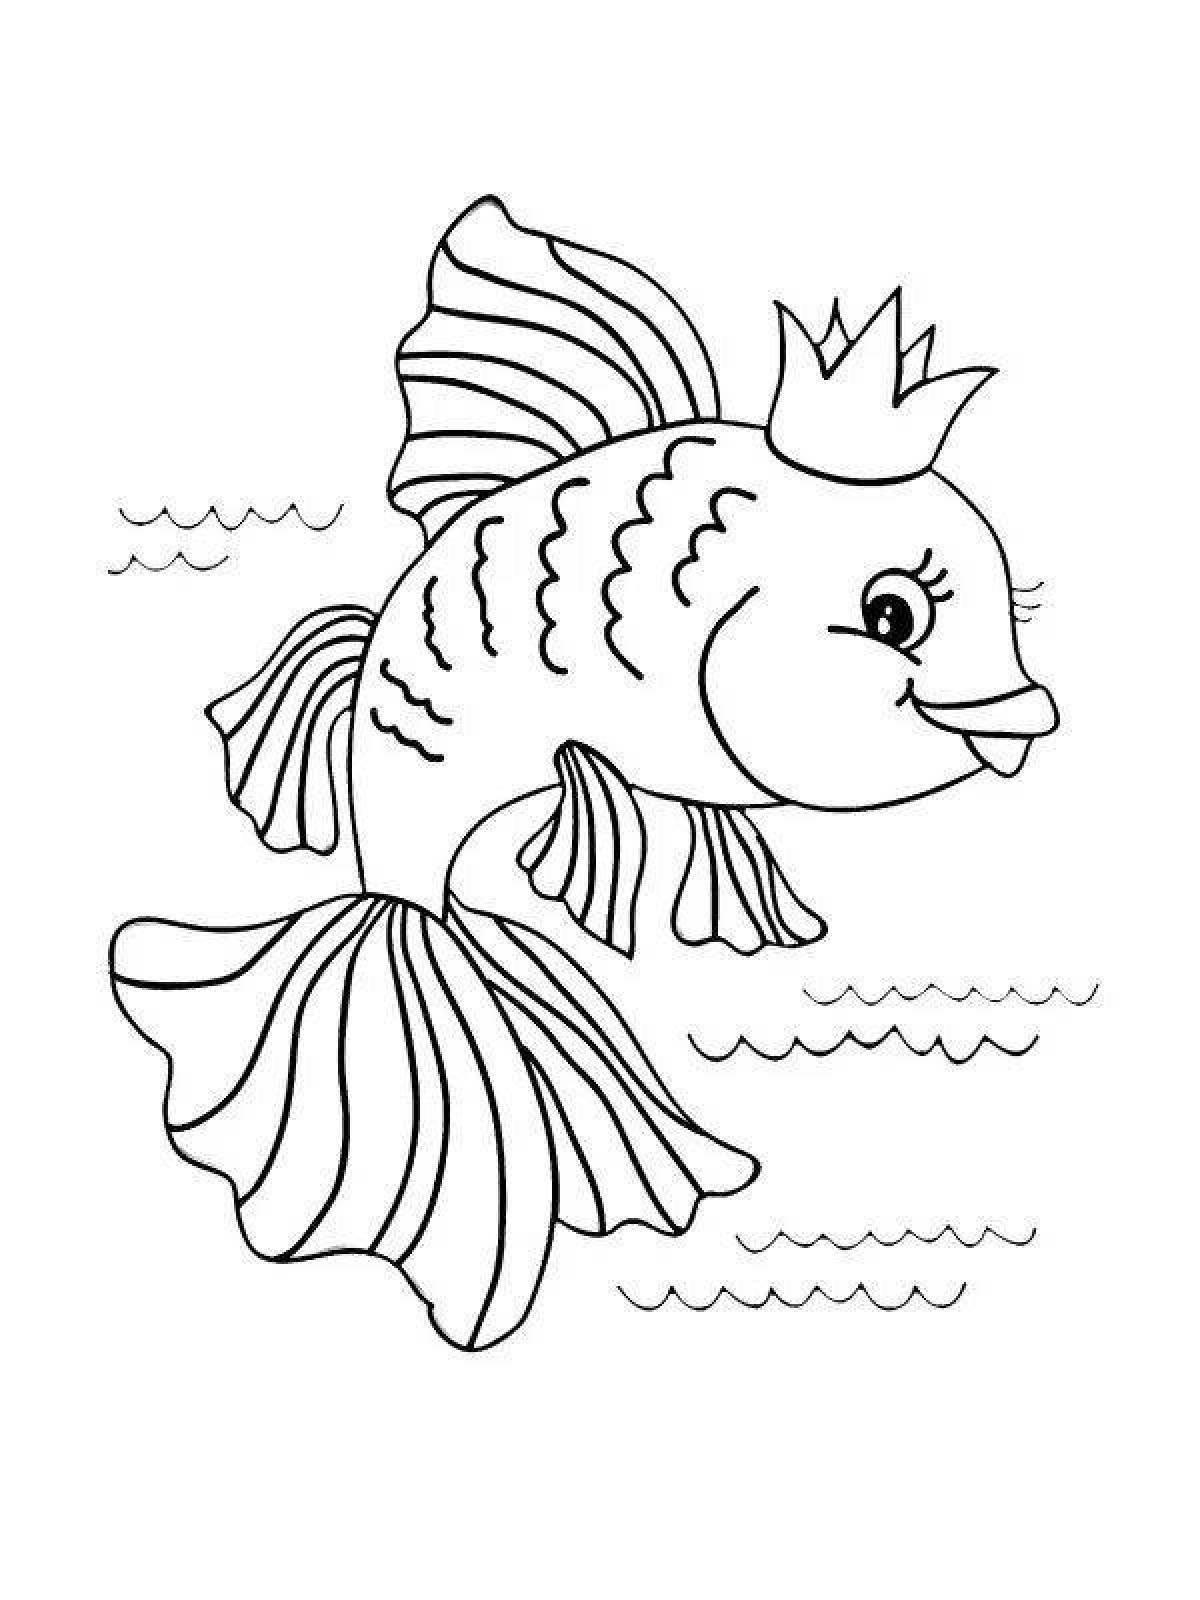 Морские рыбки.раскраска-антистресс для детей и взрослых. иллюстрация, изолированные на белом фоне.